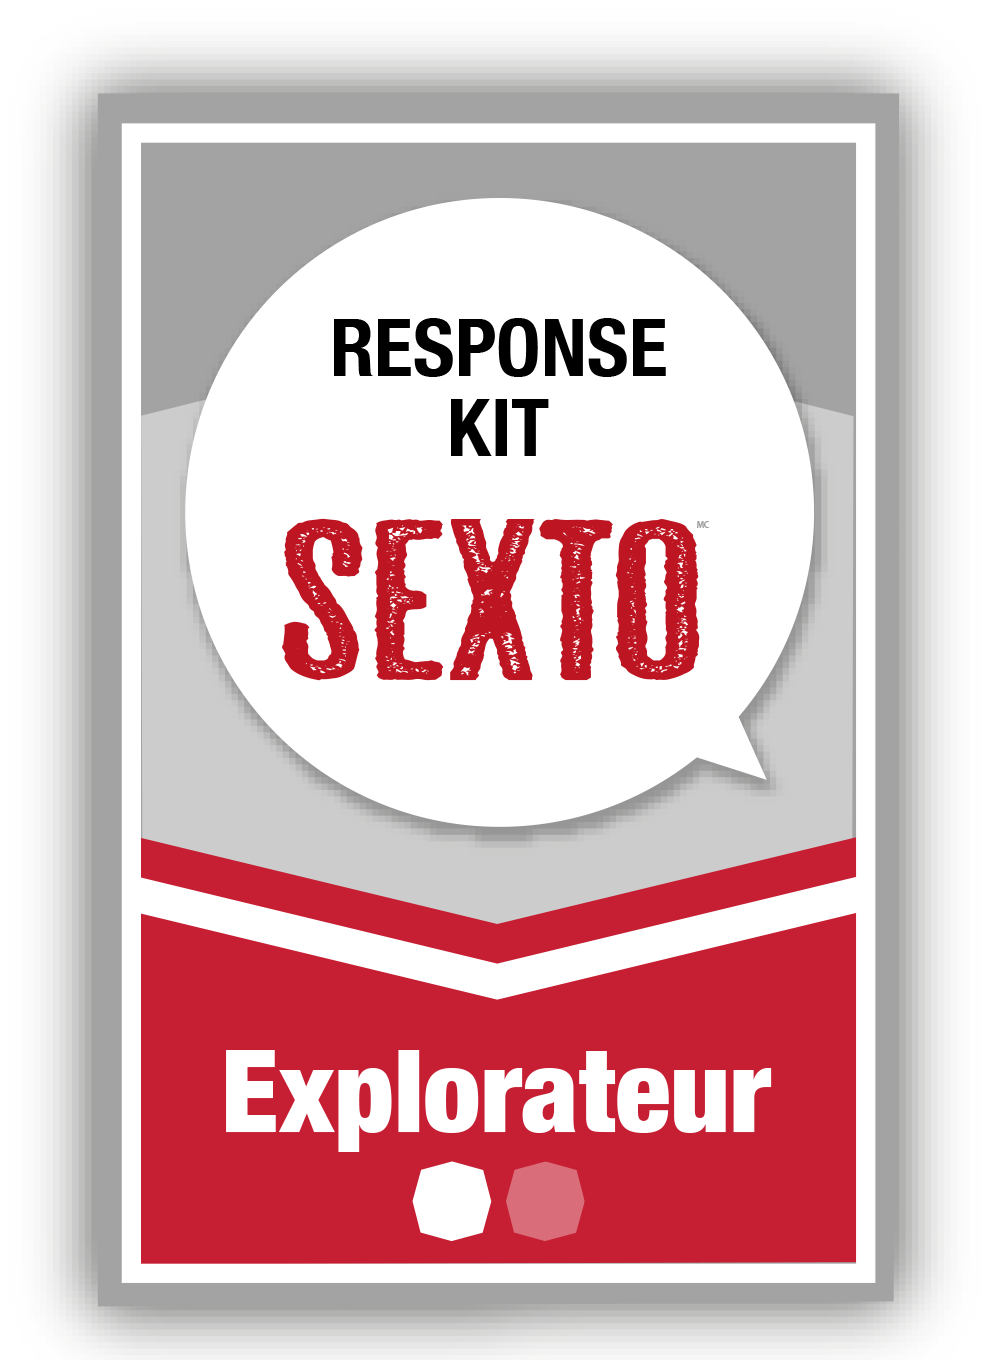 Sexto response kit 1 - Explorateur